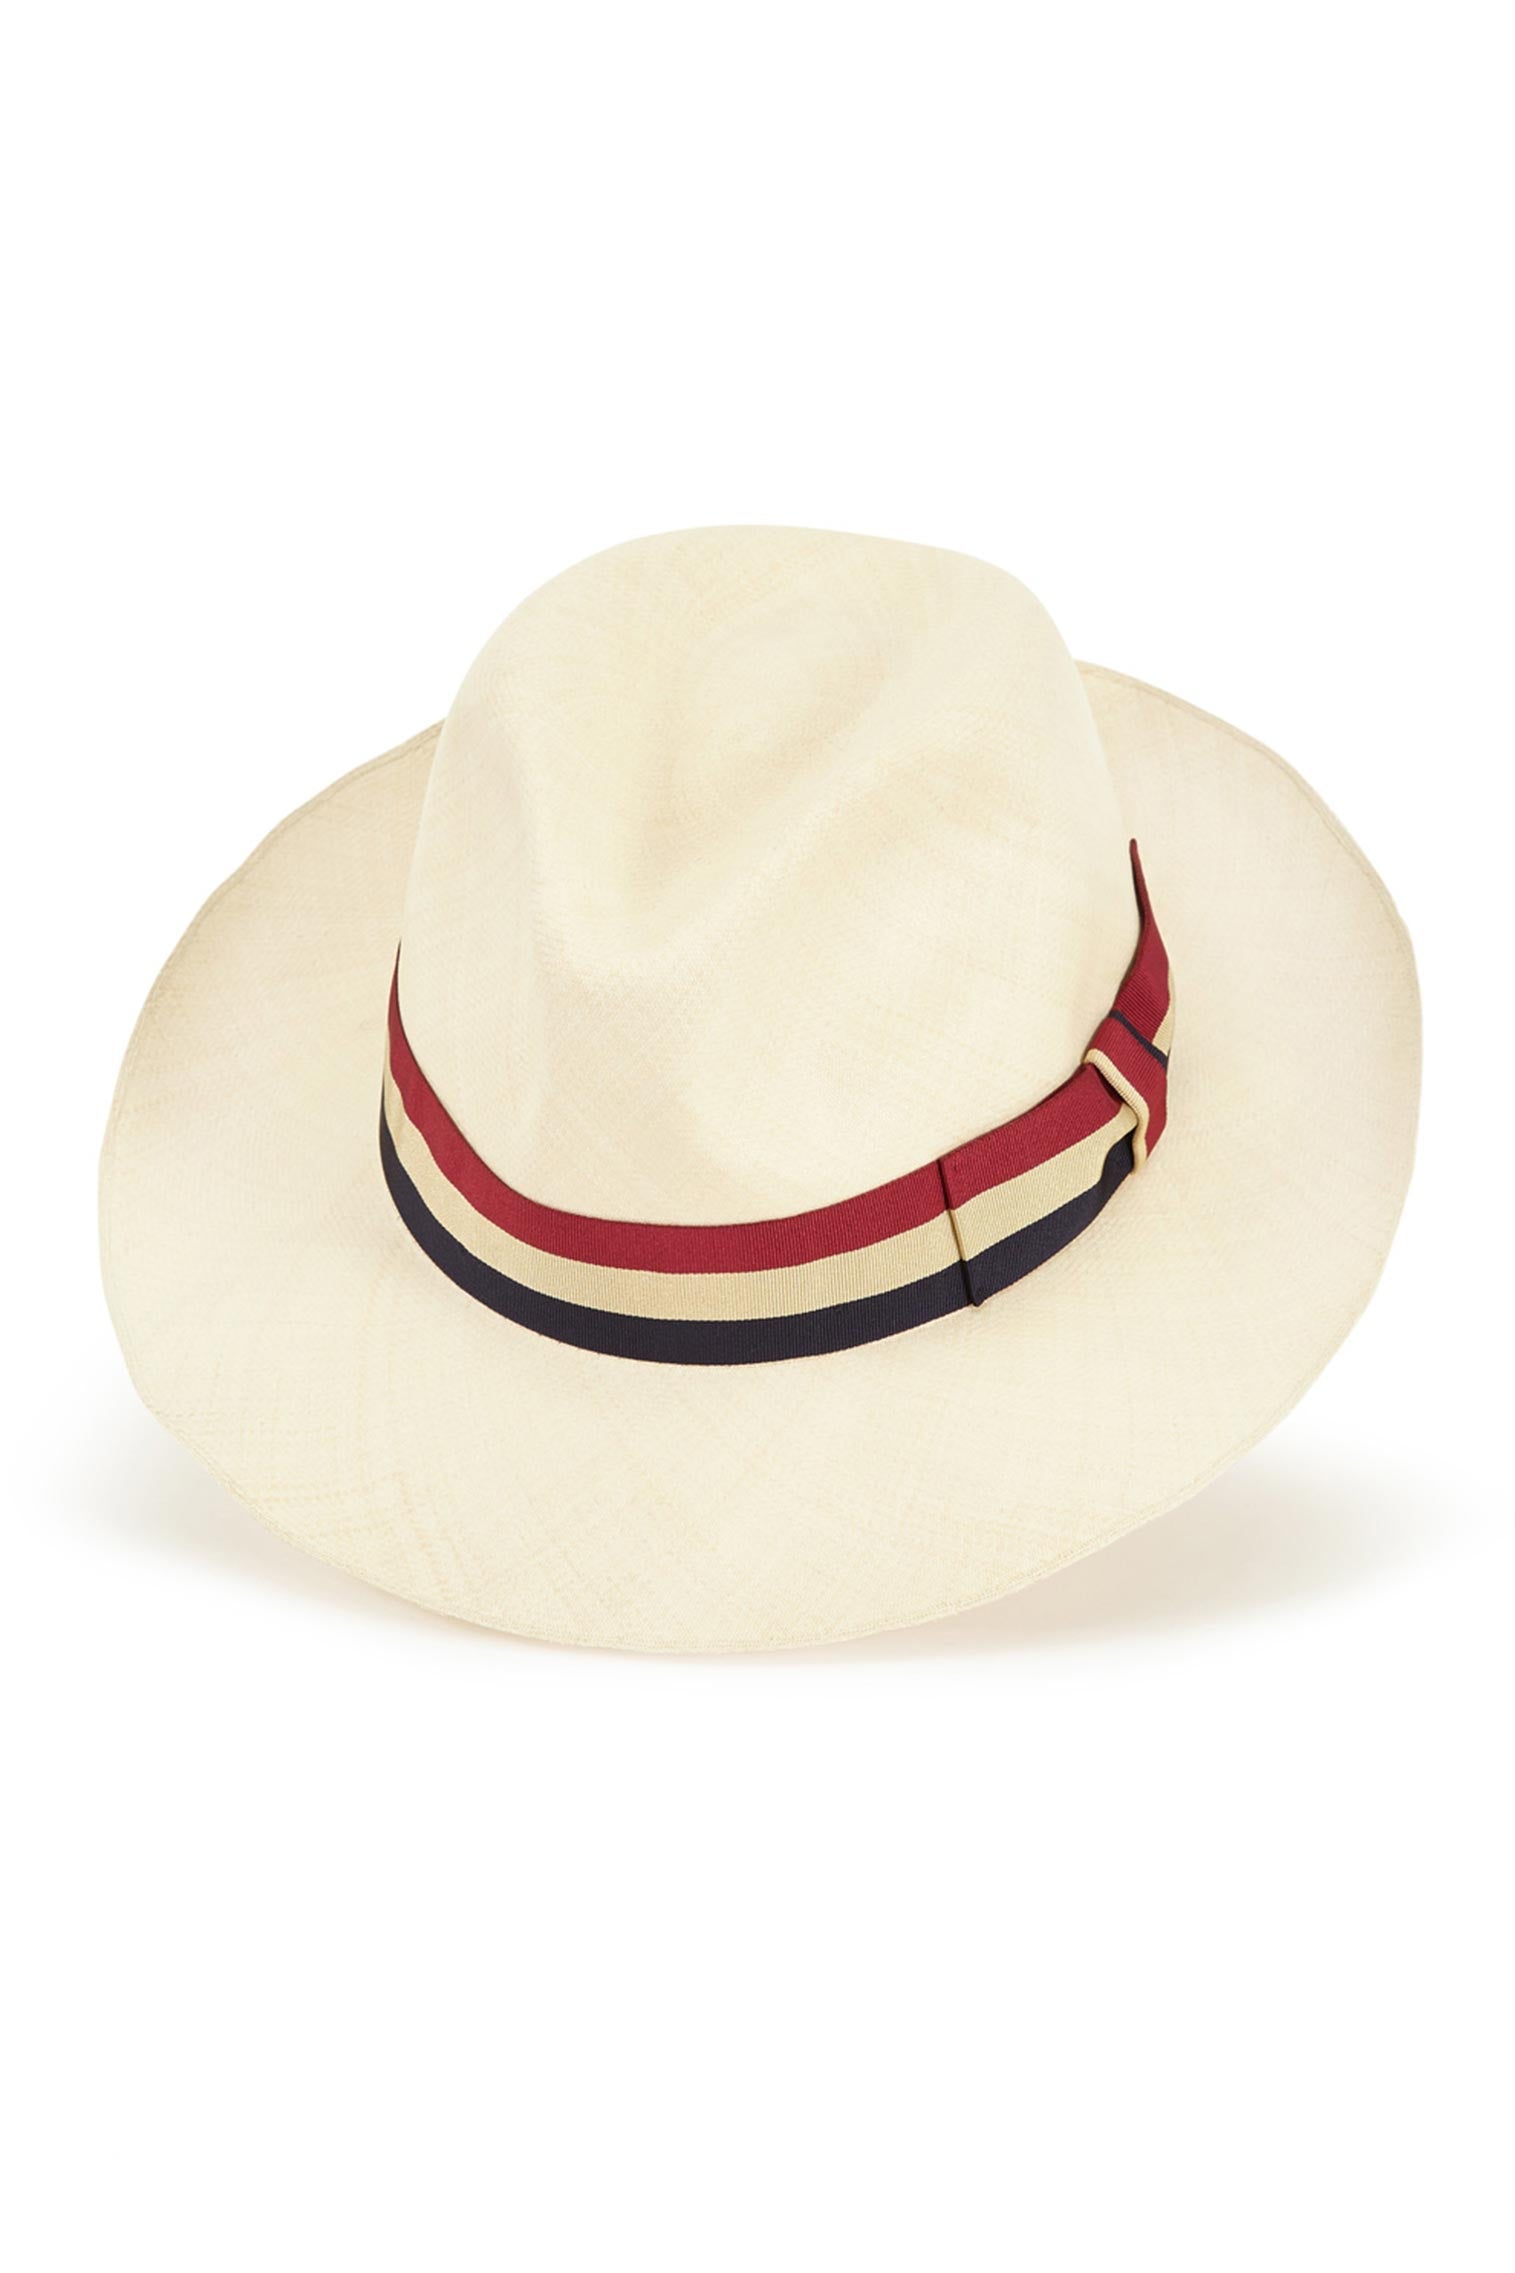 Bespoke Ultra-Fine Montecristi Panama - Panamas, Straw and Sun Hats for Men - Lock & Co. Hatters London UK